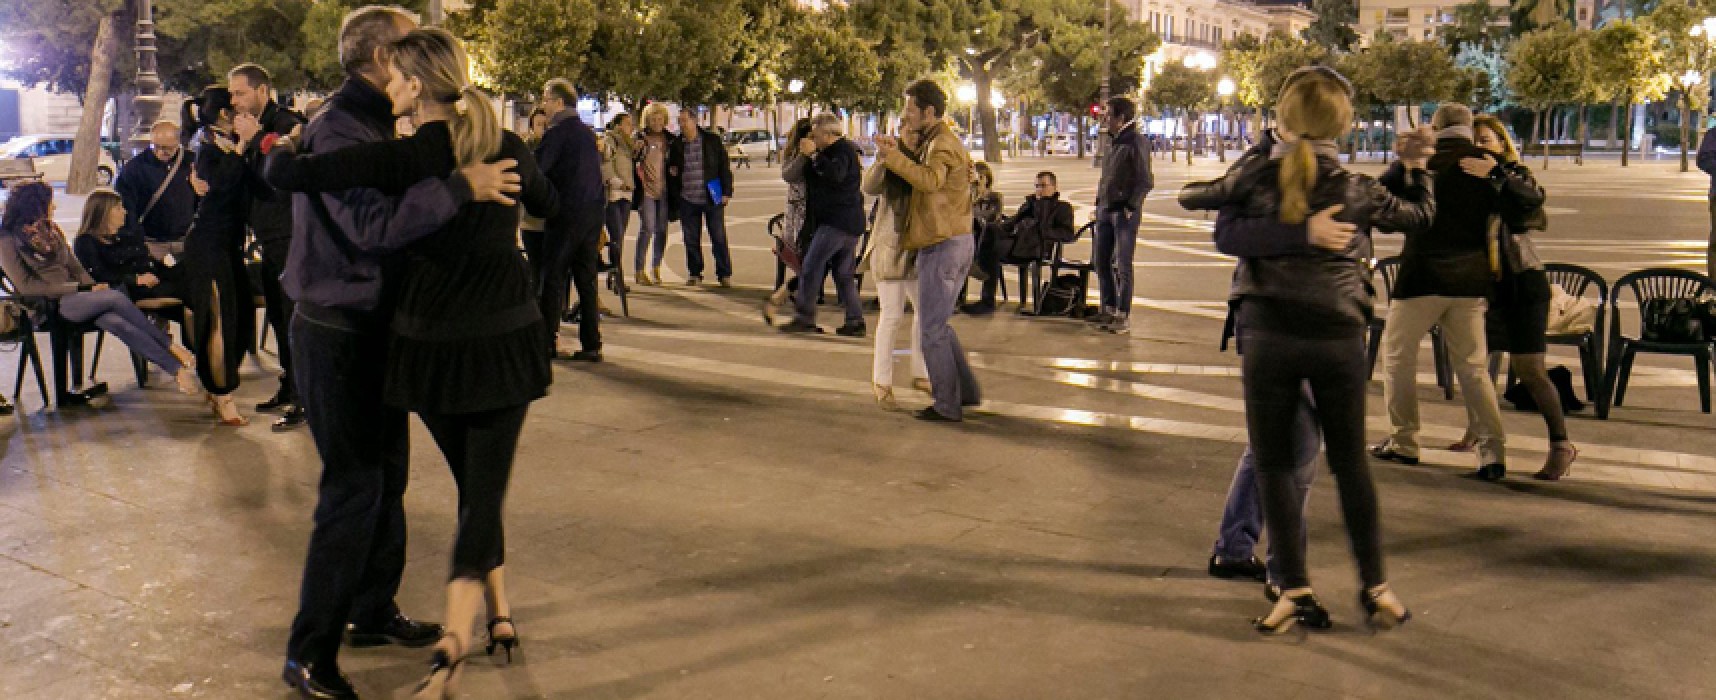 Tango argentino in piazza… e Bisceglie diventa un angolo di Buenos Aires per due ore